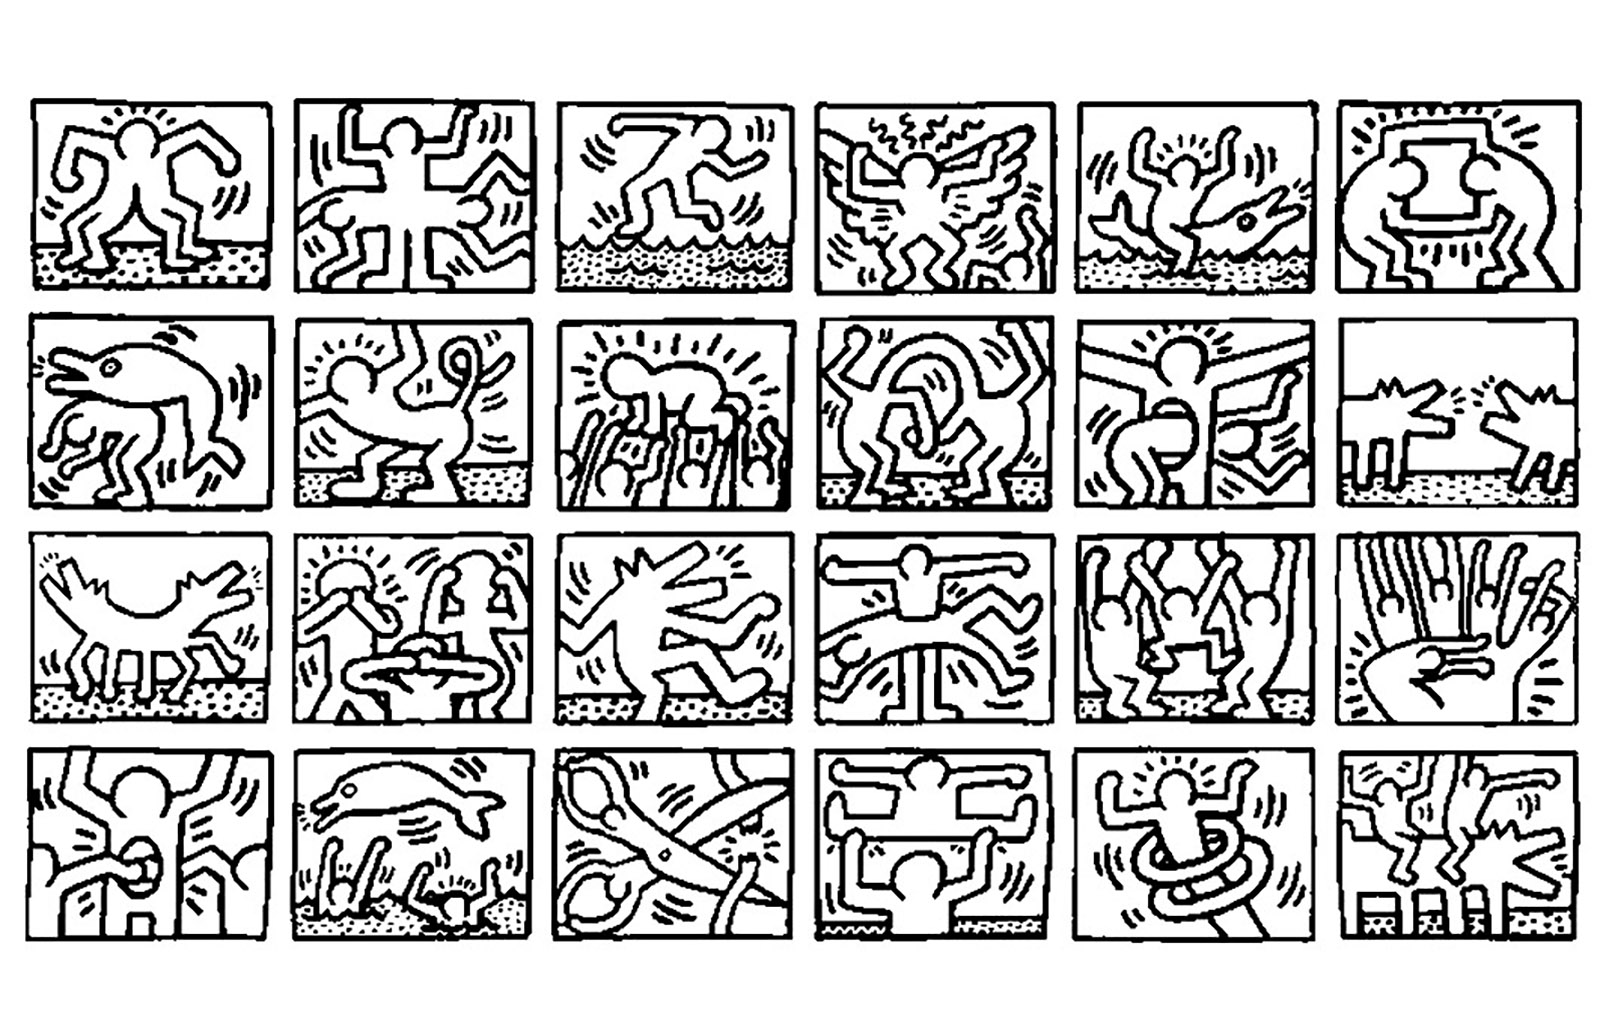 Mosaico di diverse opere di Keith Haring. Lo sapevate? Haring iniziò a disegnare con il gesso bianco sui cartelloni neri vuoti (destinati alla pubblicità) nelle stazioni della metropolitana. Haring li vedeva come una tela libera.
